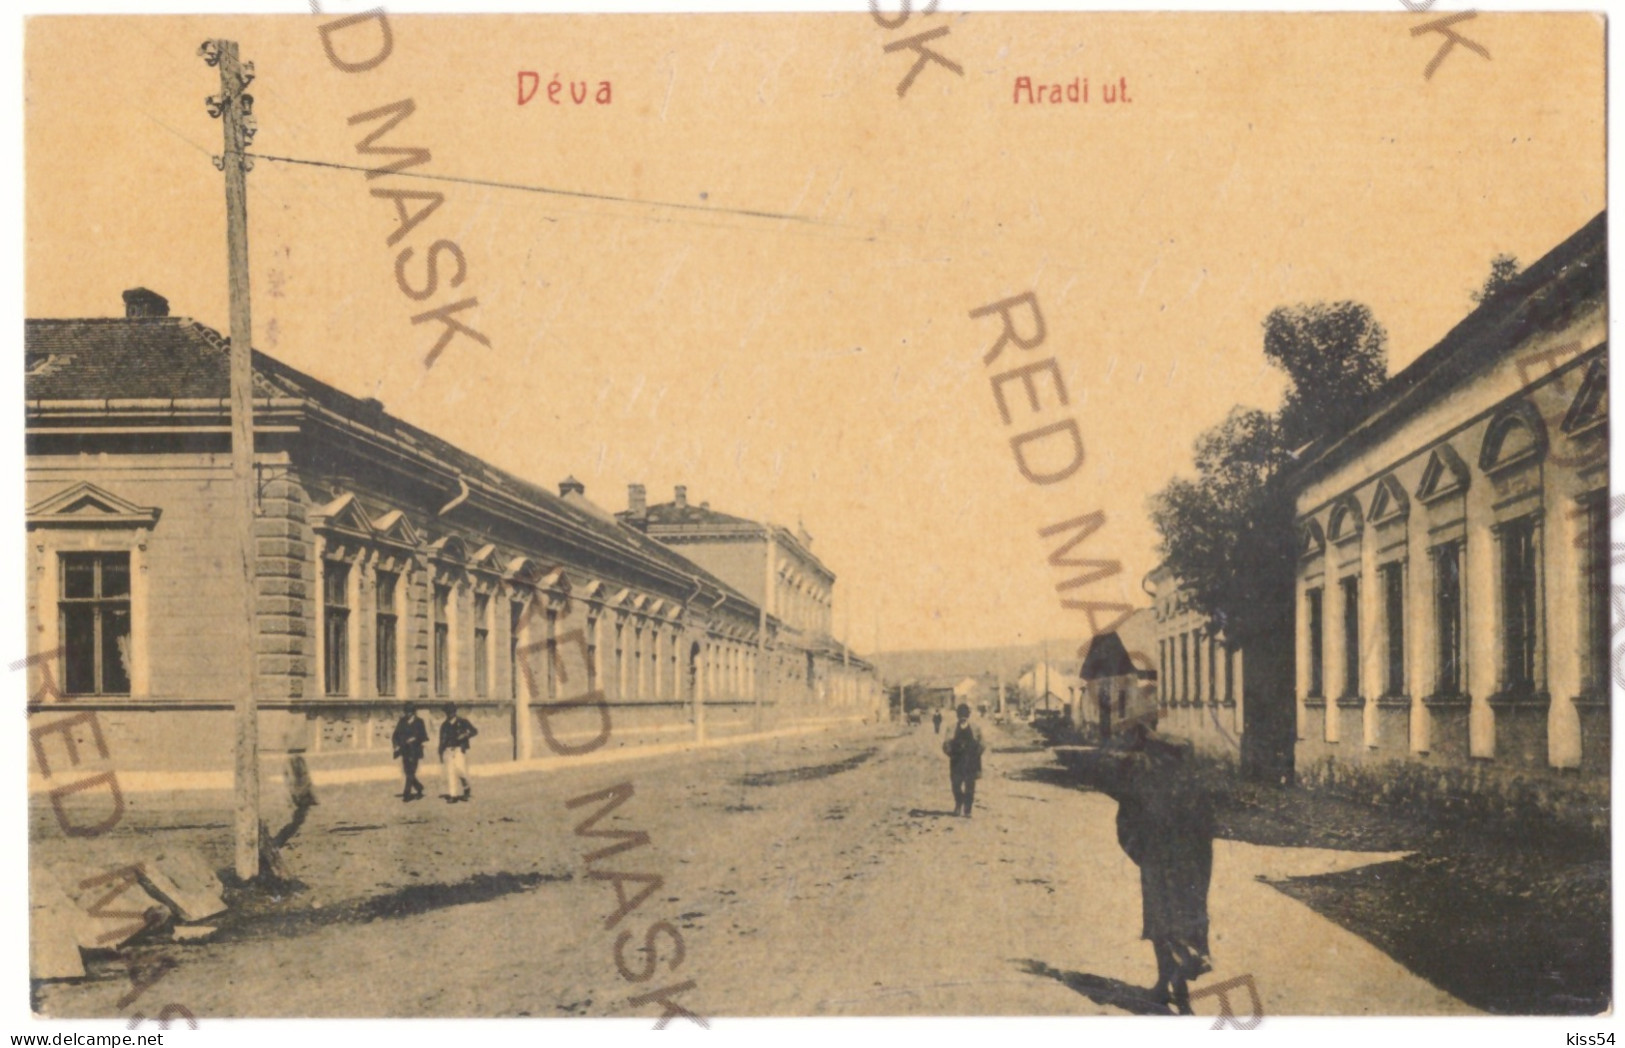 RO 40 - 21155 DEVA, Hunedoara, Romania - Old Postcard - Used - 1908 - Roemenië